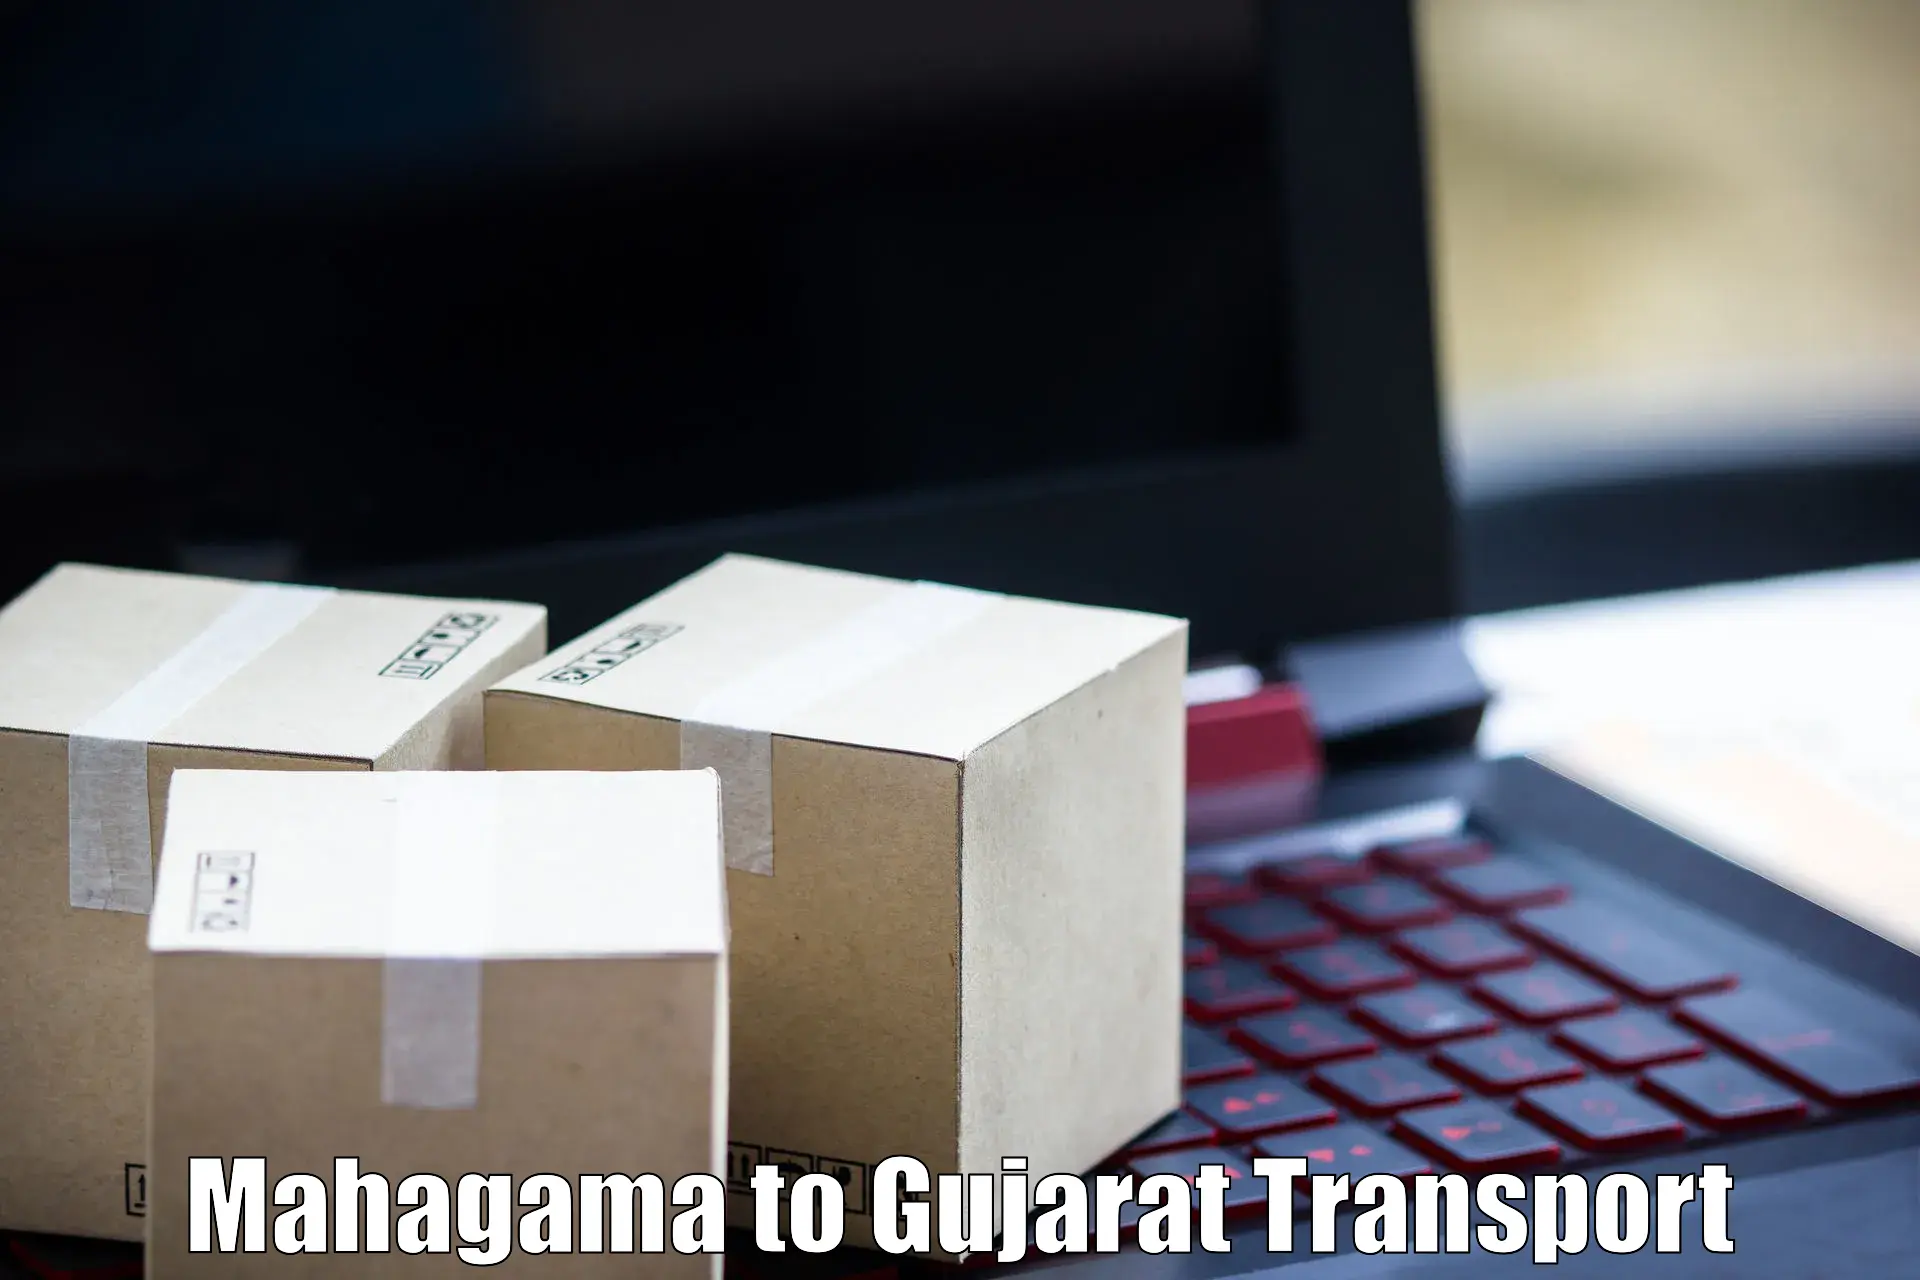 Furniture transport service Mahagama to Navrangpura